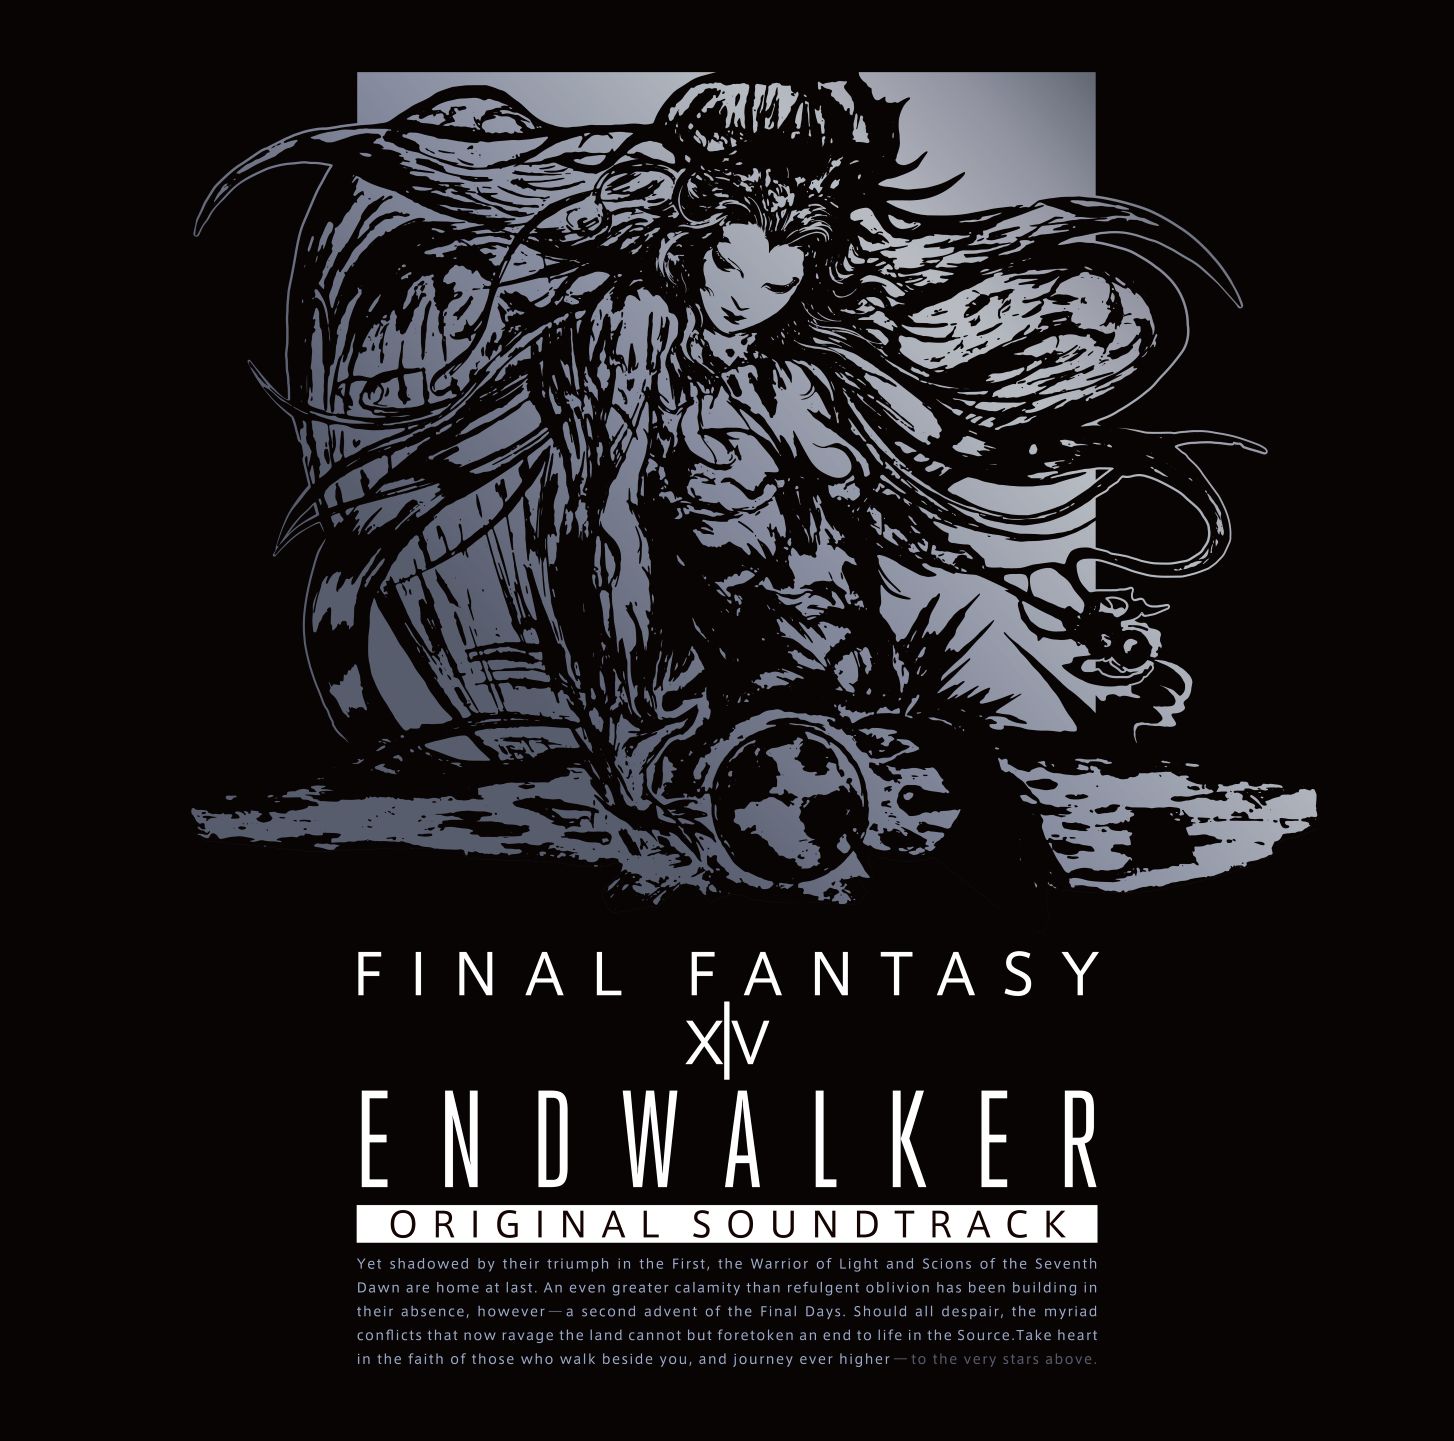 Endwalker: Final Fantasy XIV Original Soundtrack | Final Fantasy